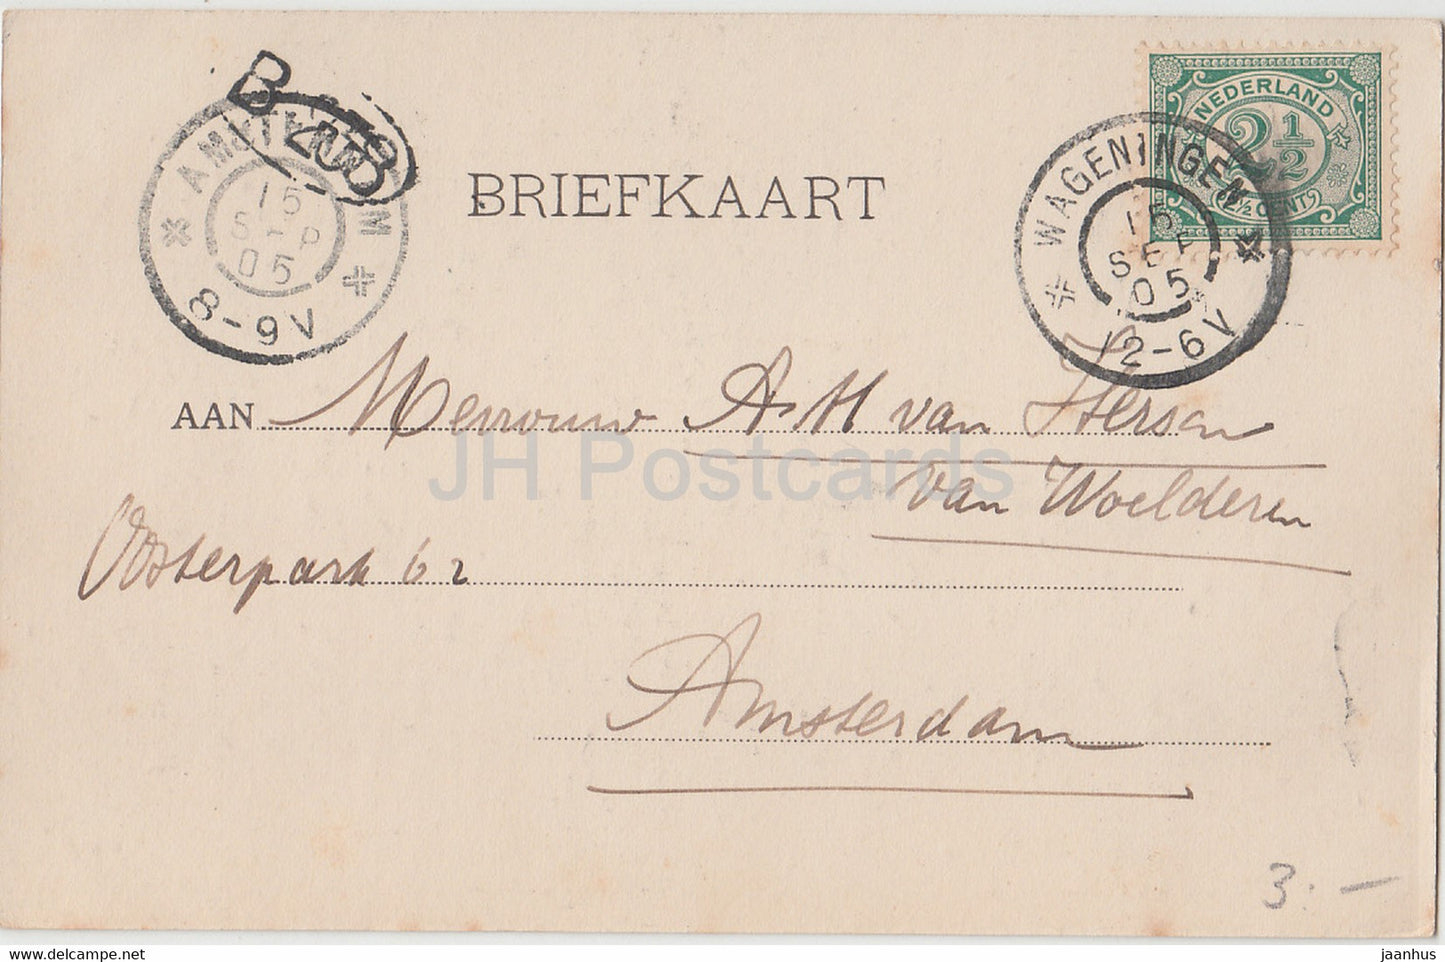 Wageningen - Holleweg - 918 - alte Postkarte - 1905 - Niederlande - gebraucht